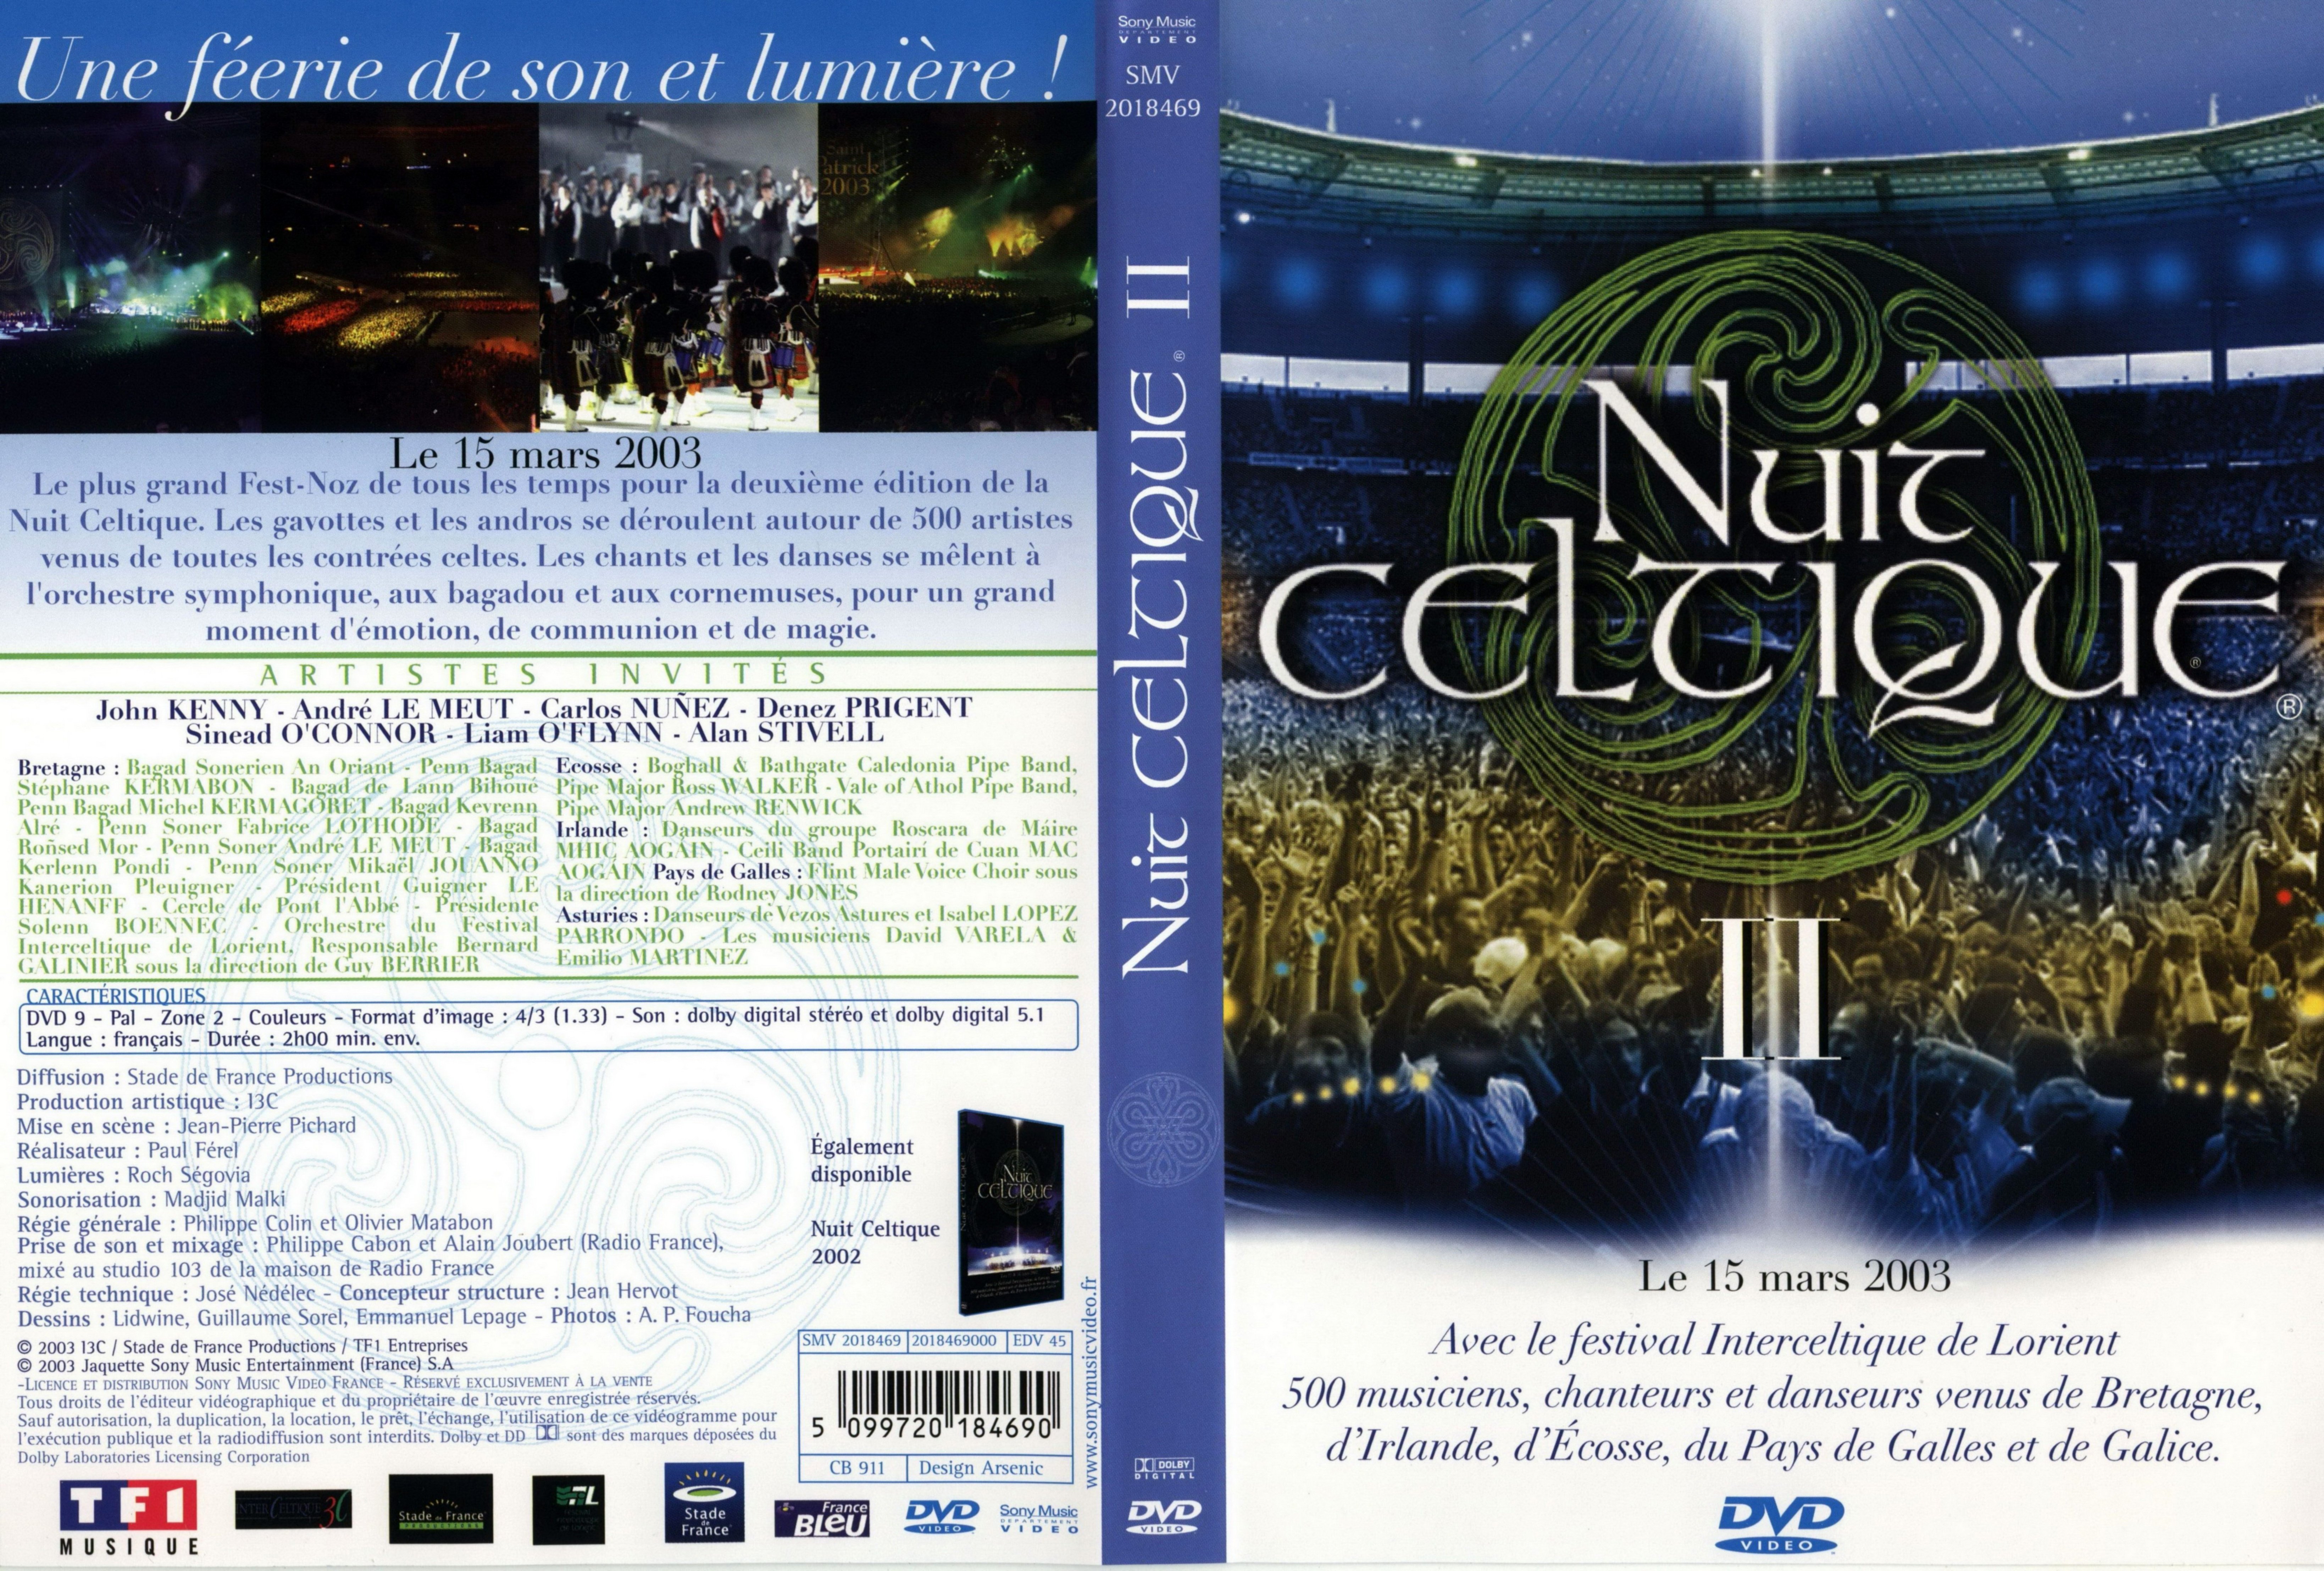 Jaquette DVD Nuit celtique 2